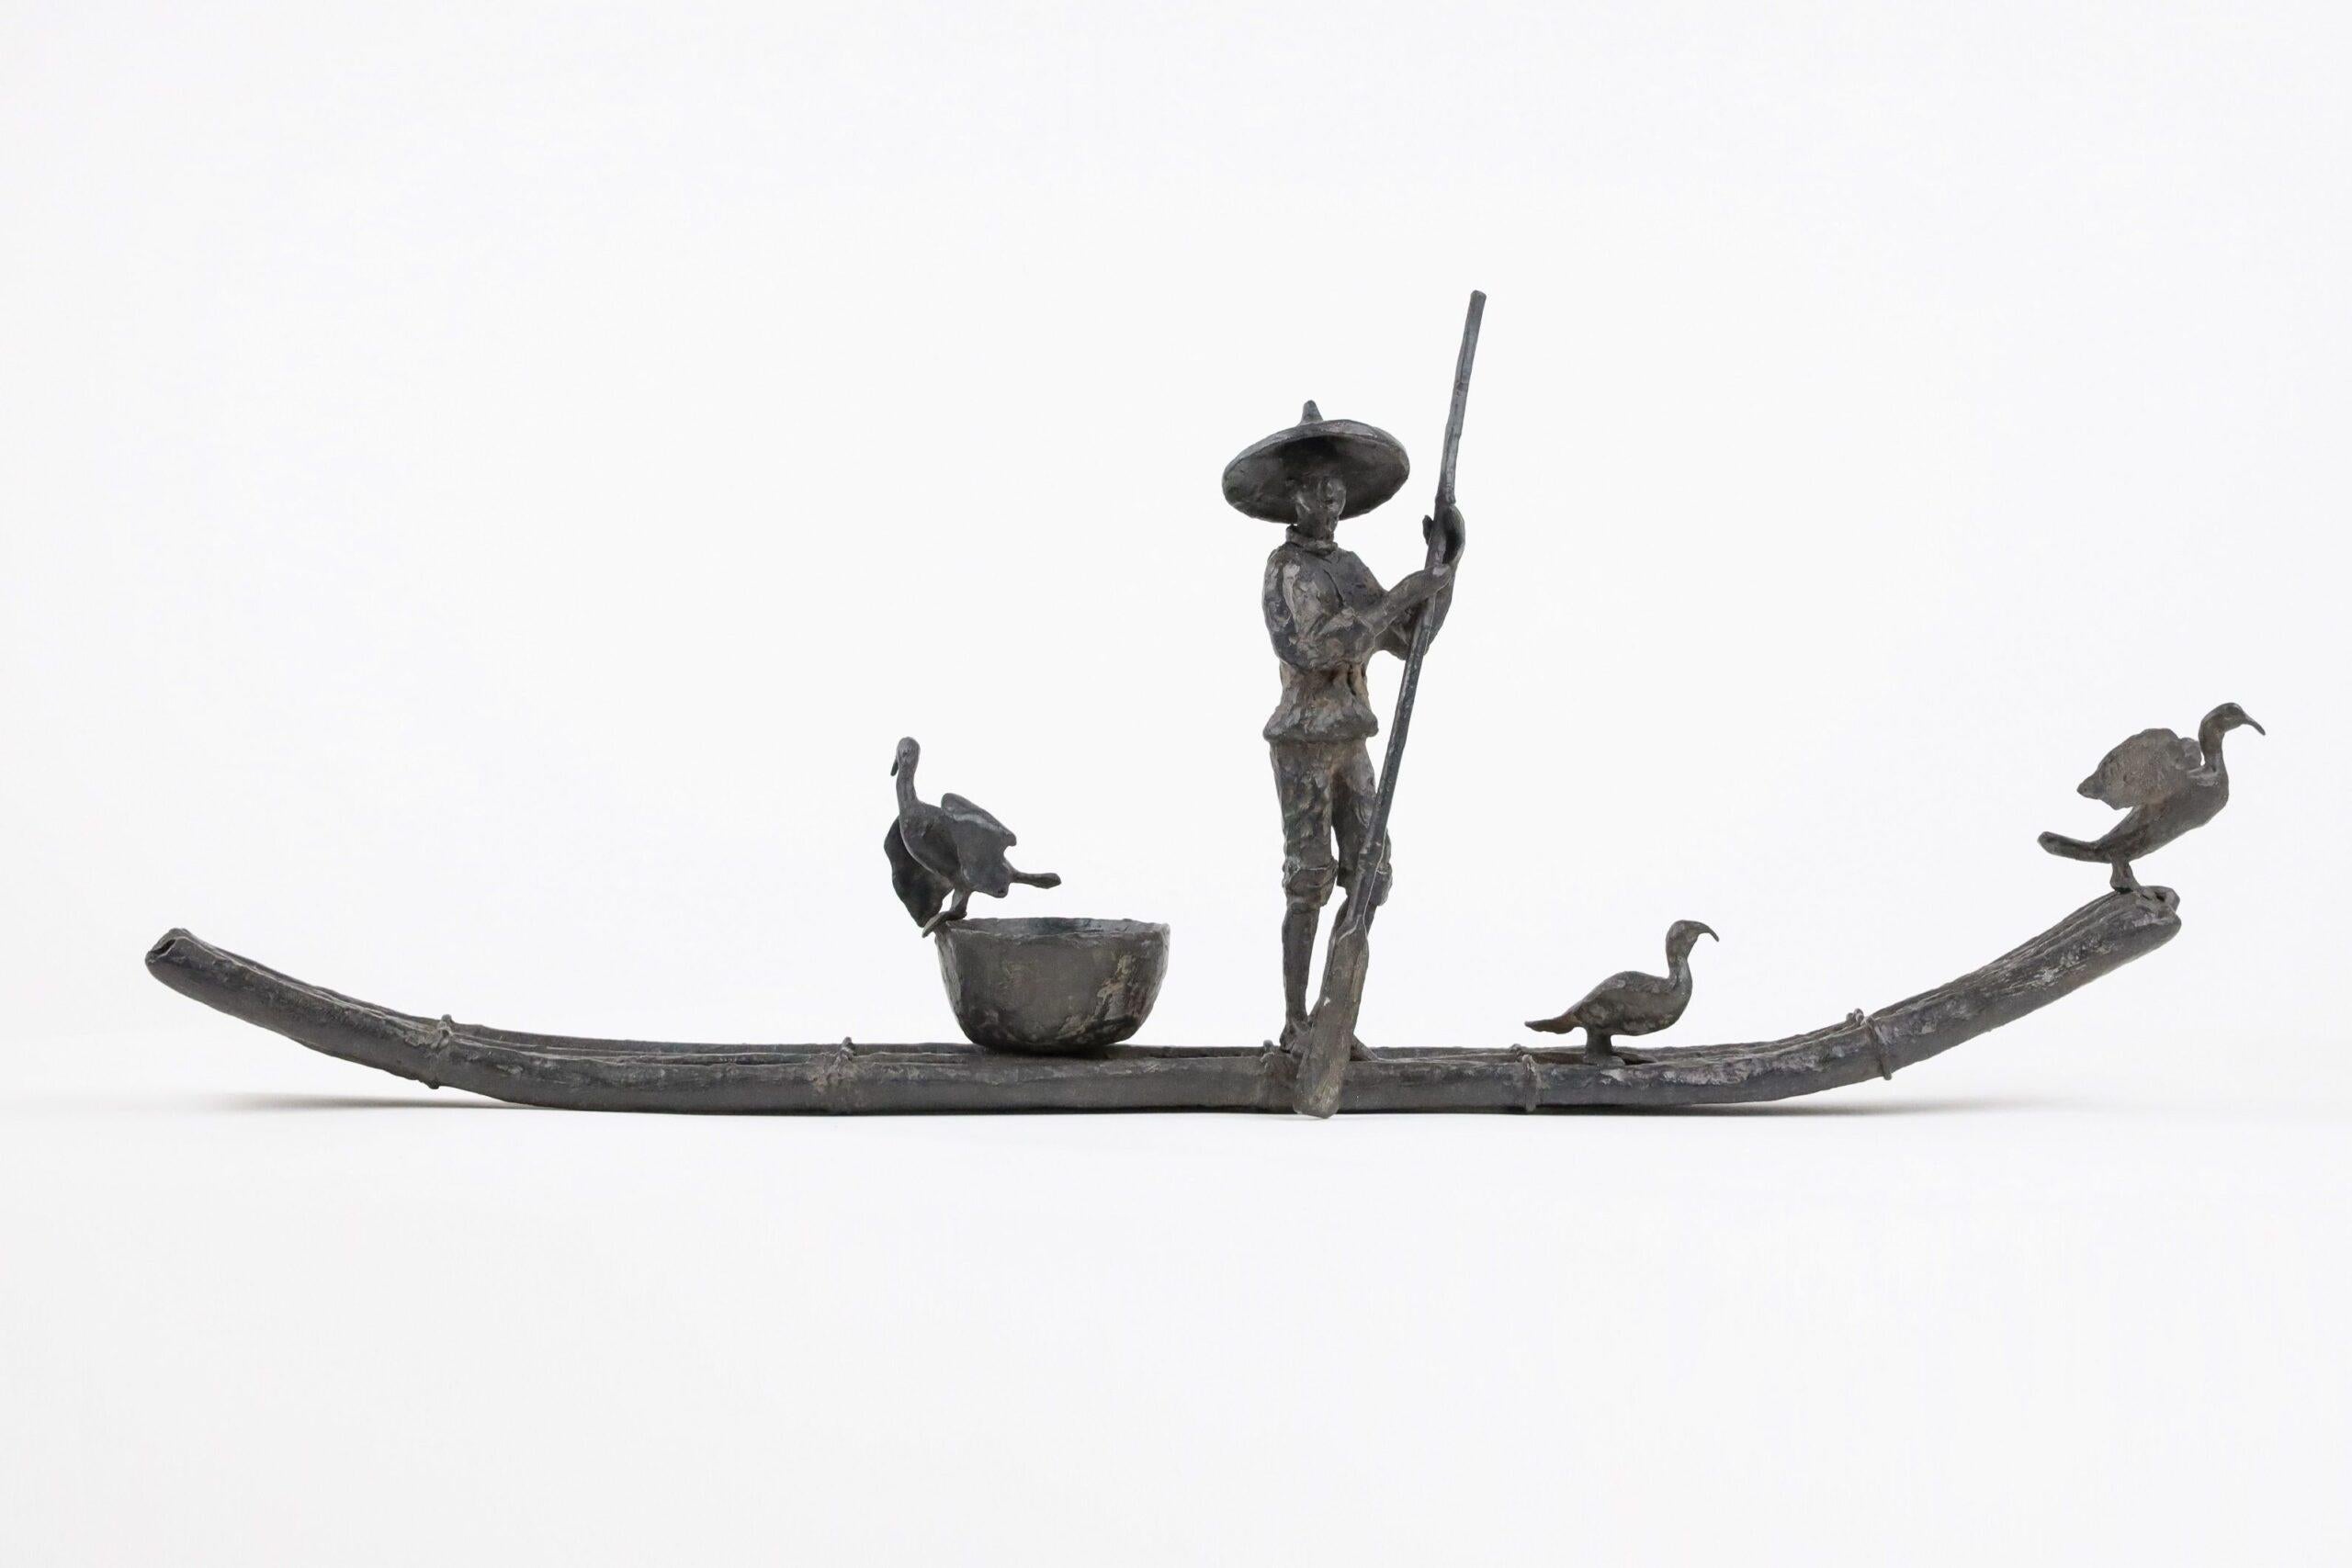 Cormorant Fishing by Marine de Soos - Bronze sculpture, human figure, boat, bird For Sale 2